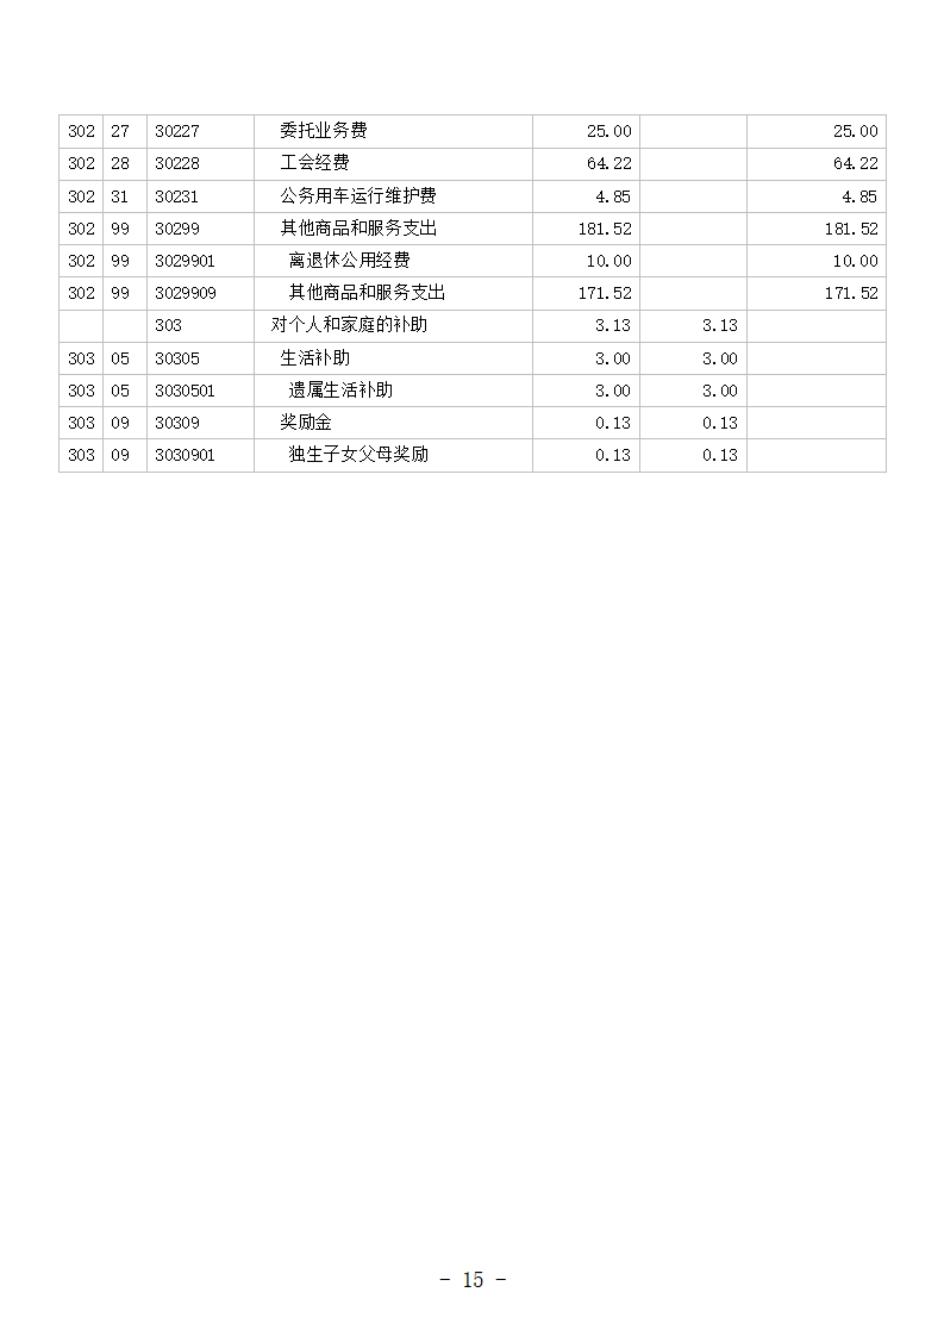 省考古院2024年四川省省级单位预算公开模板(3.14)_16.jpg